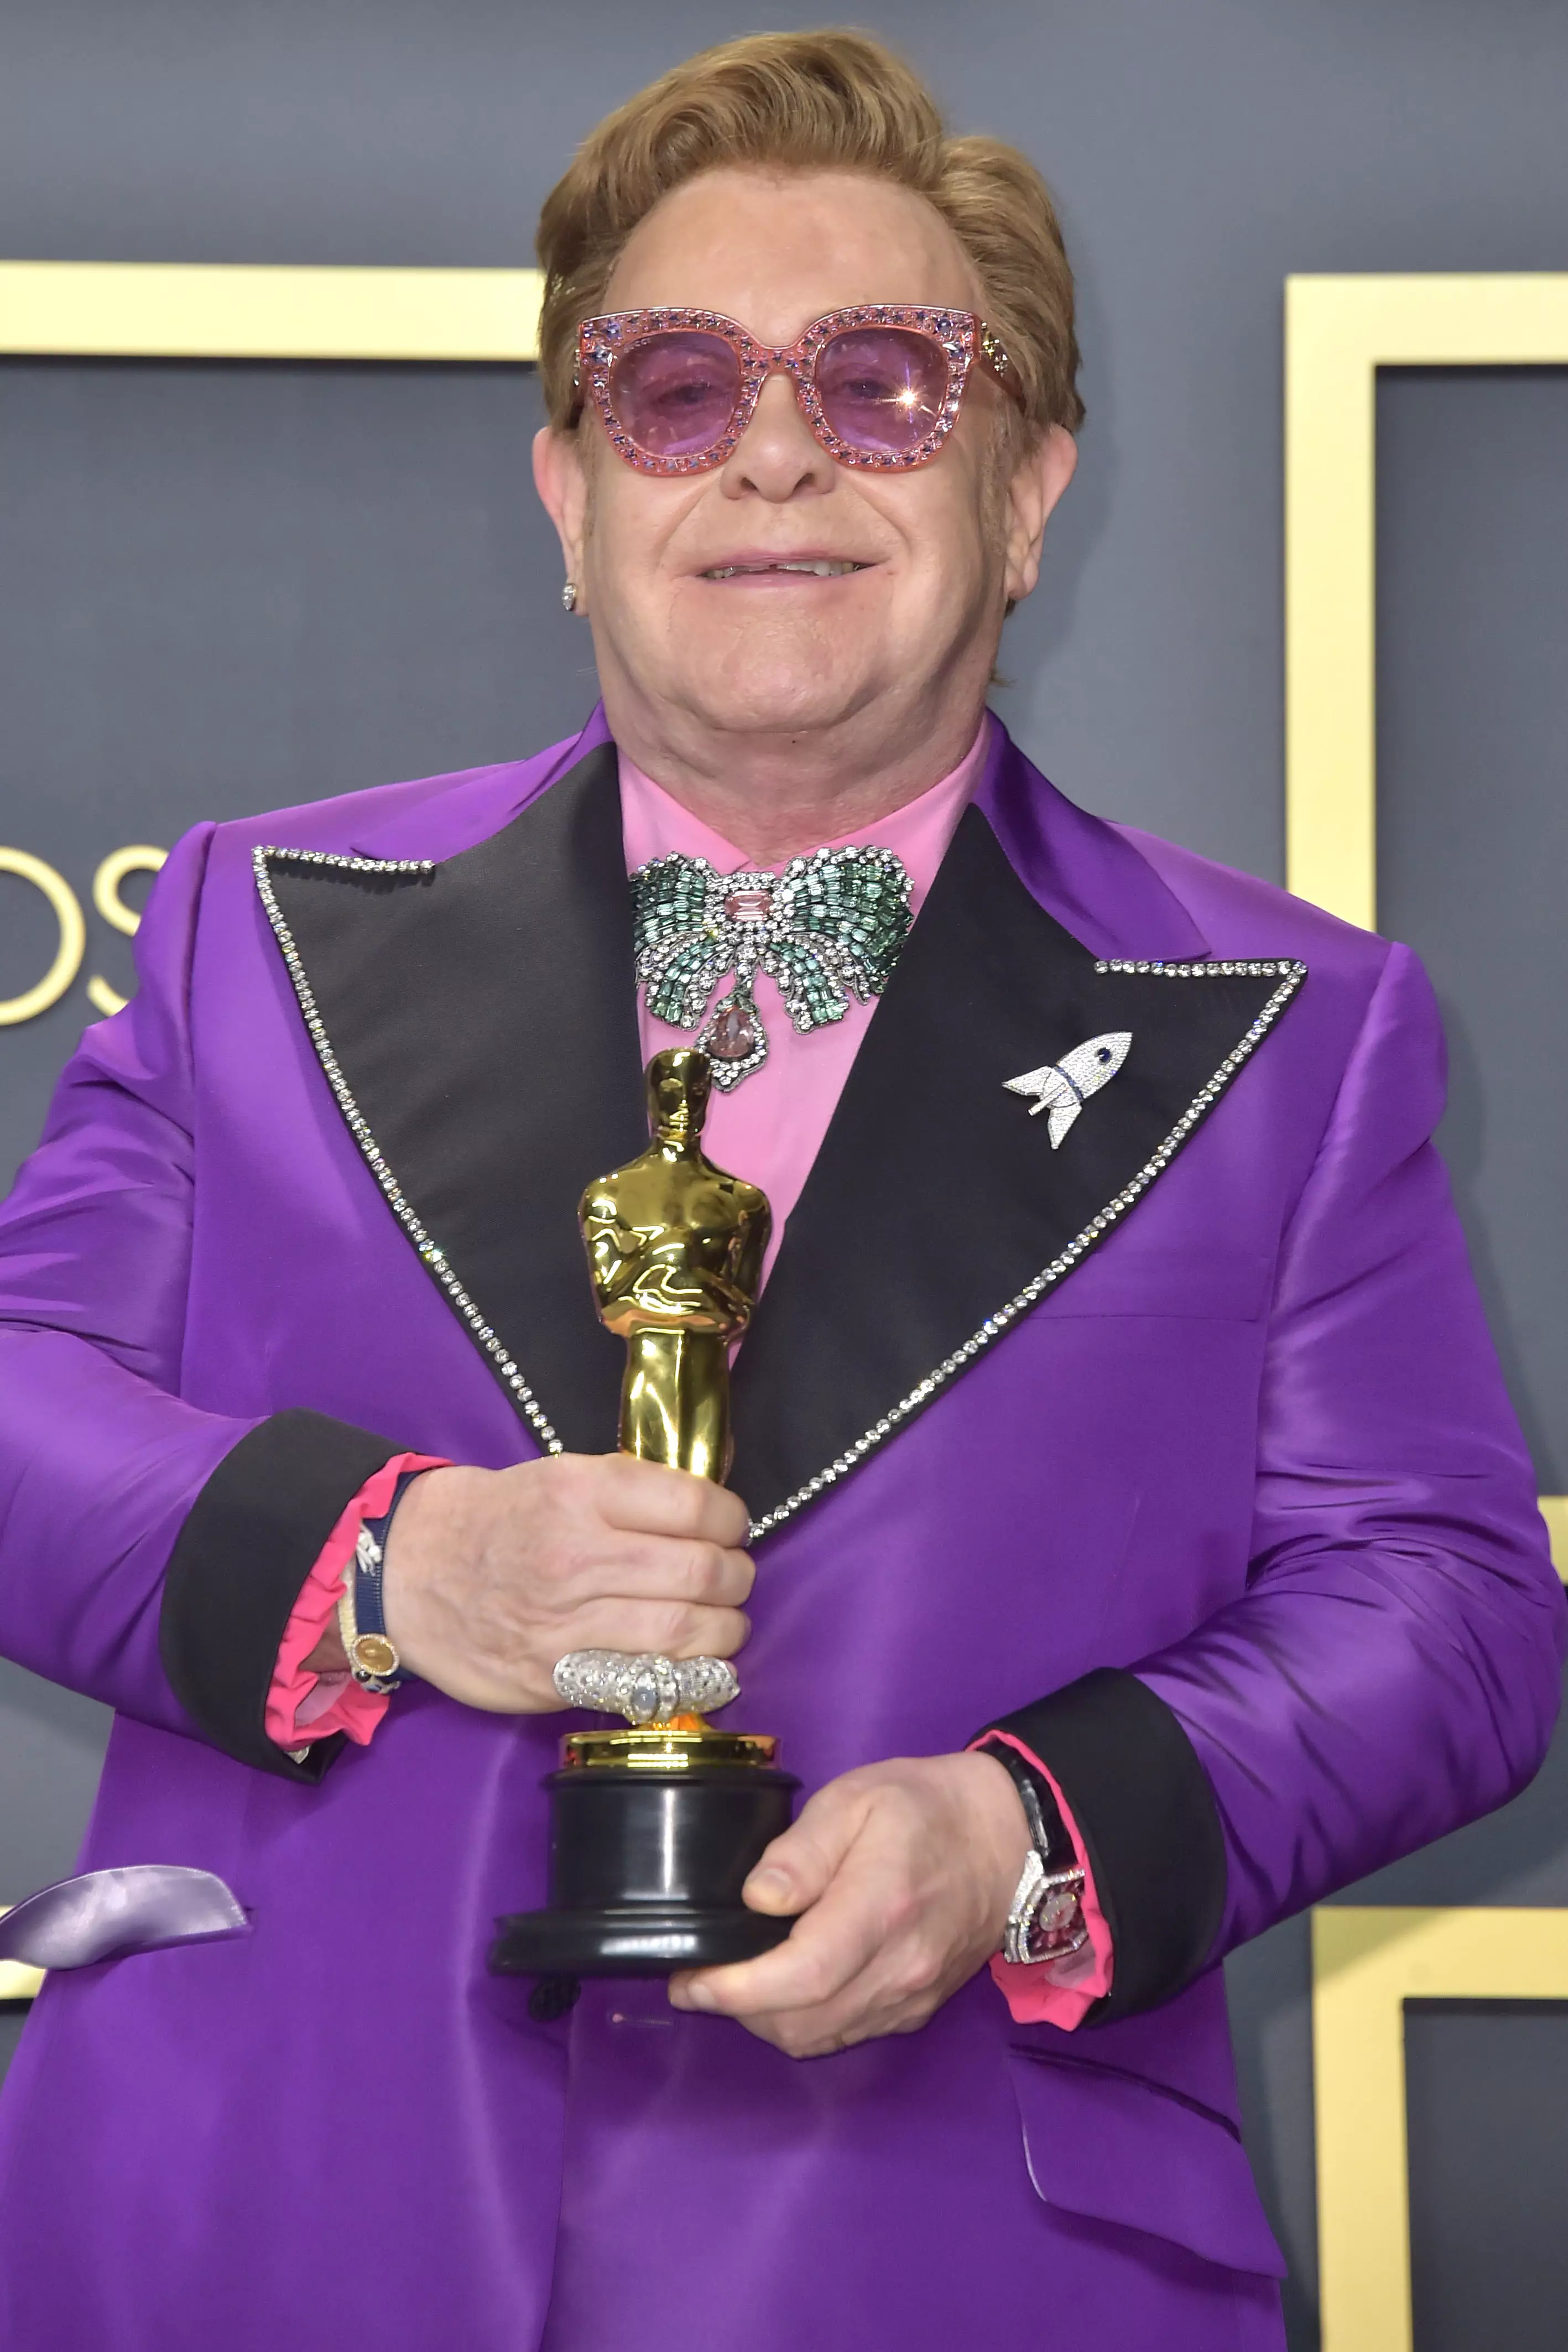 Sir Elton John is celebrating 30 years sober.